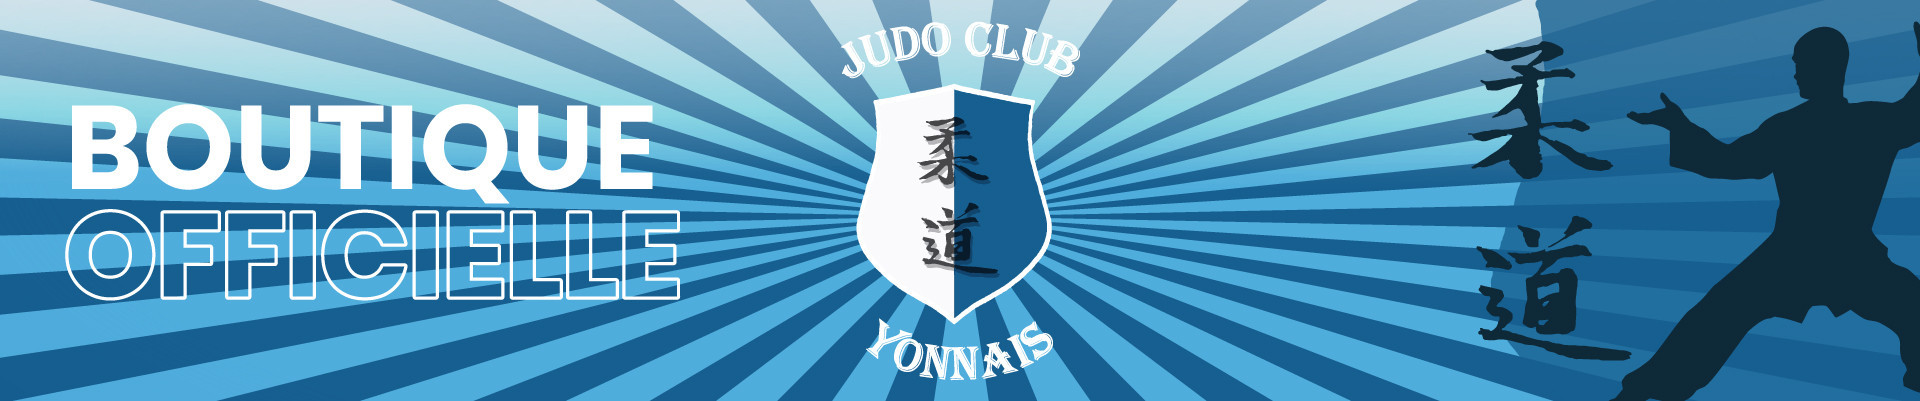 BOUTIQUE EN LIGNE | JUDO CLUB YONNAIS